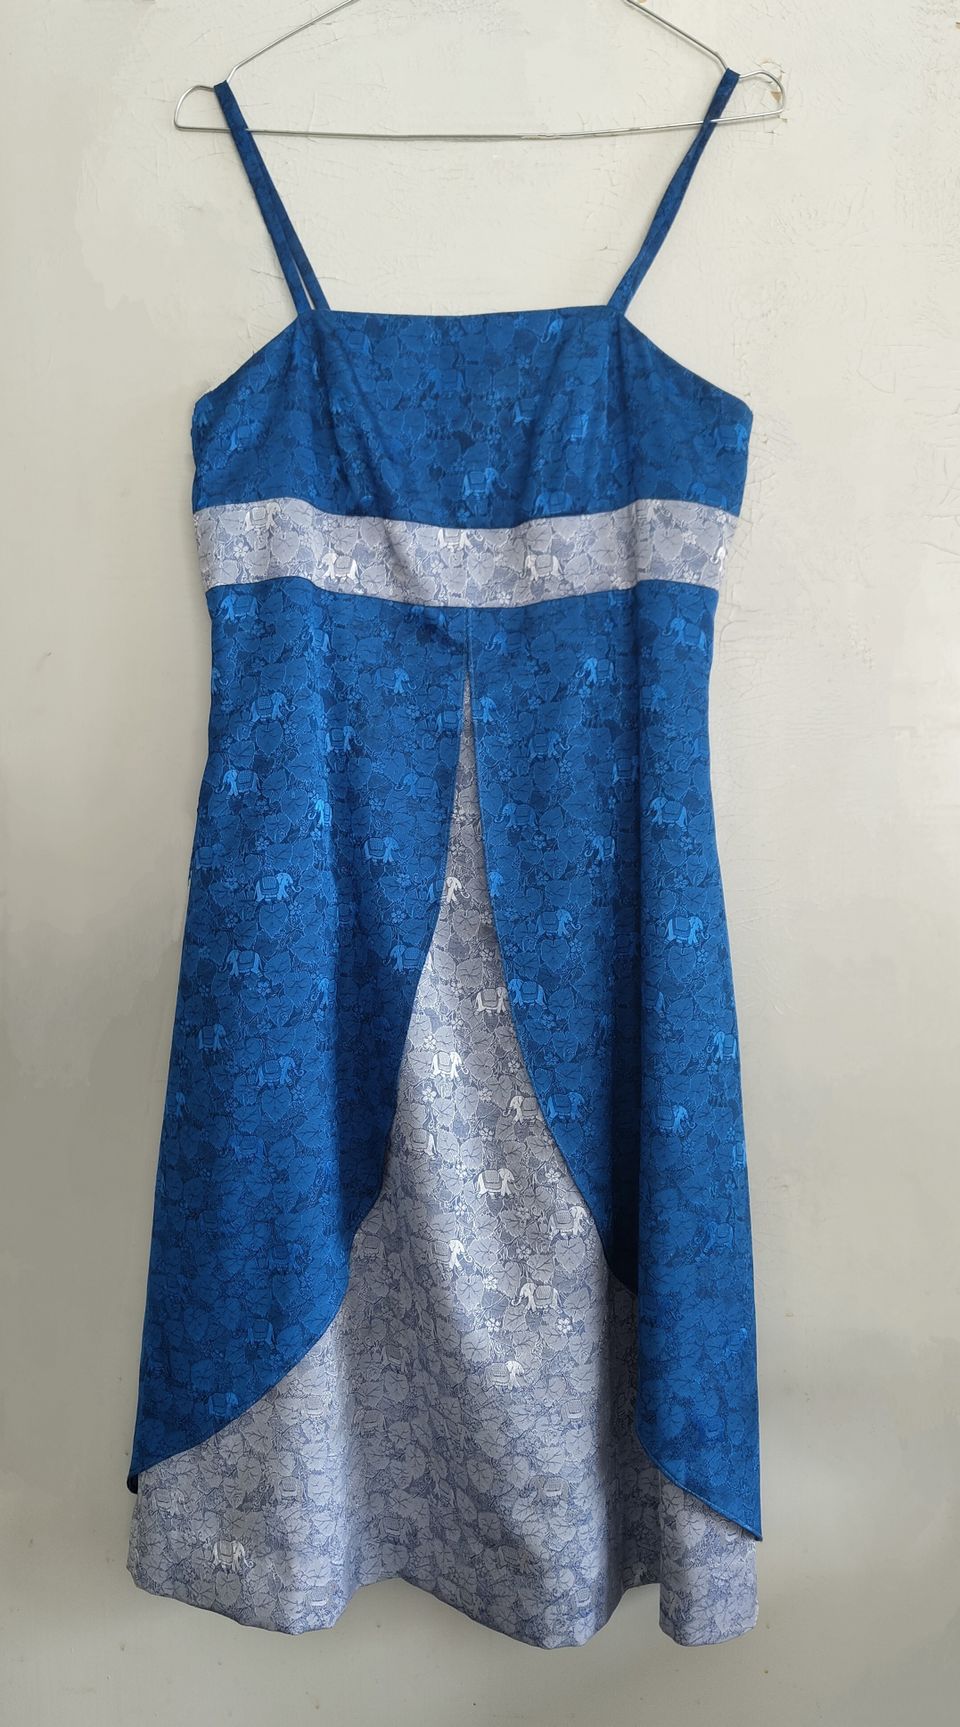 Sievä sininen mekko